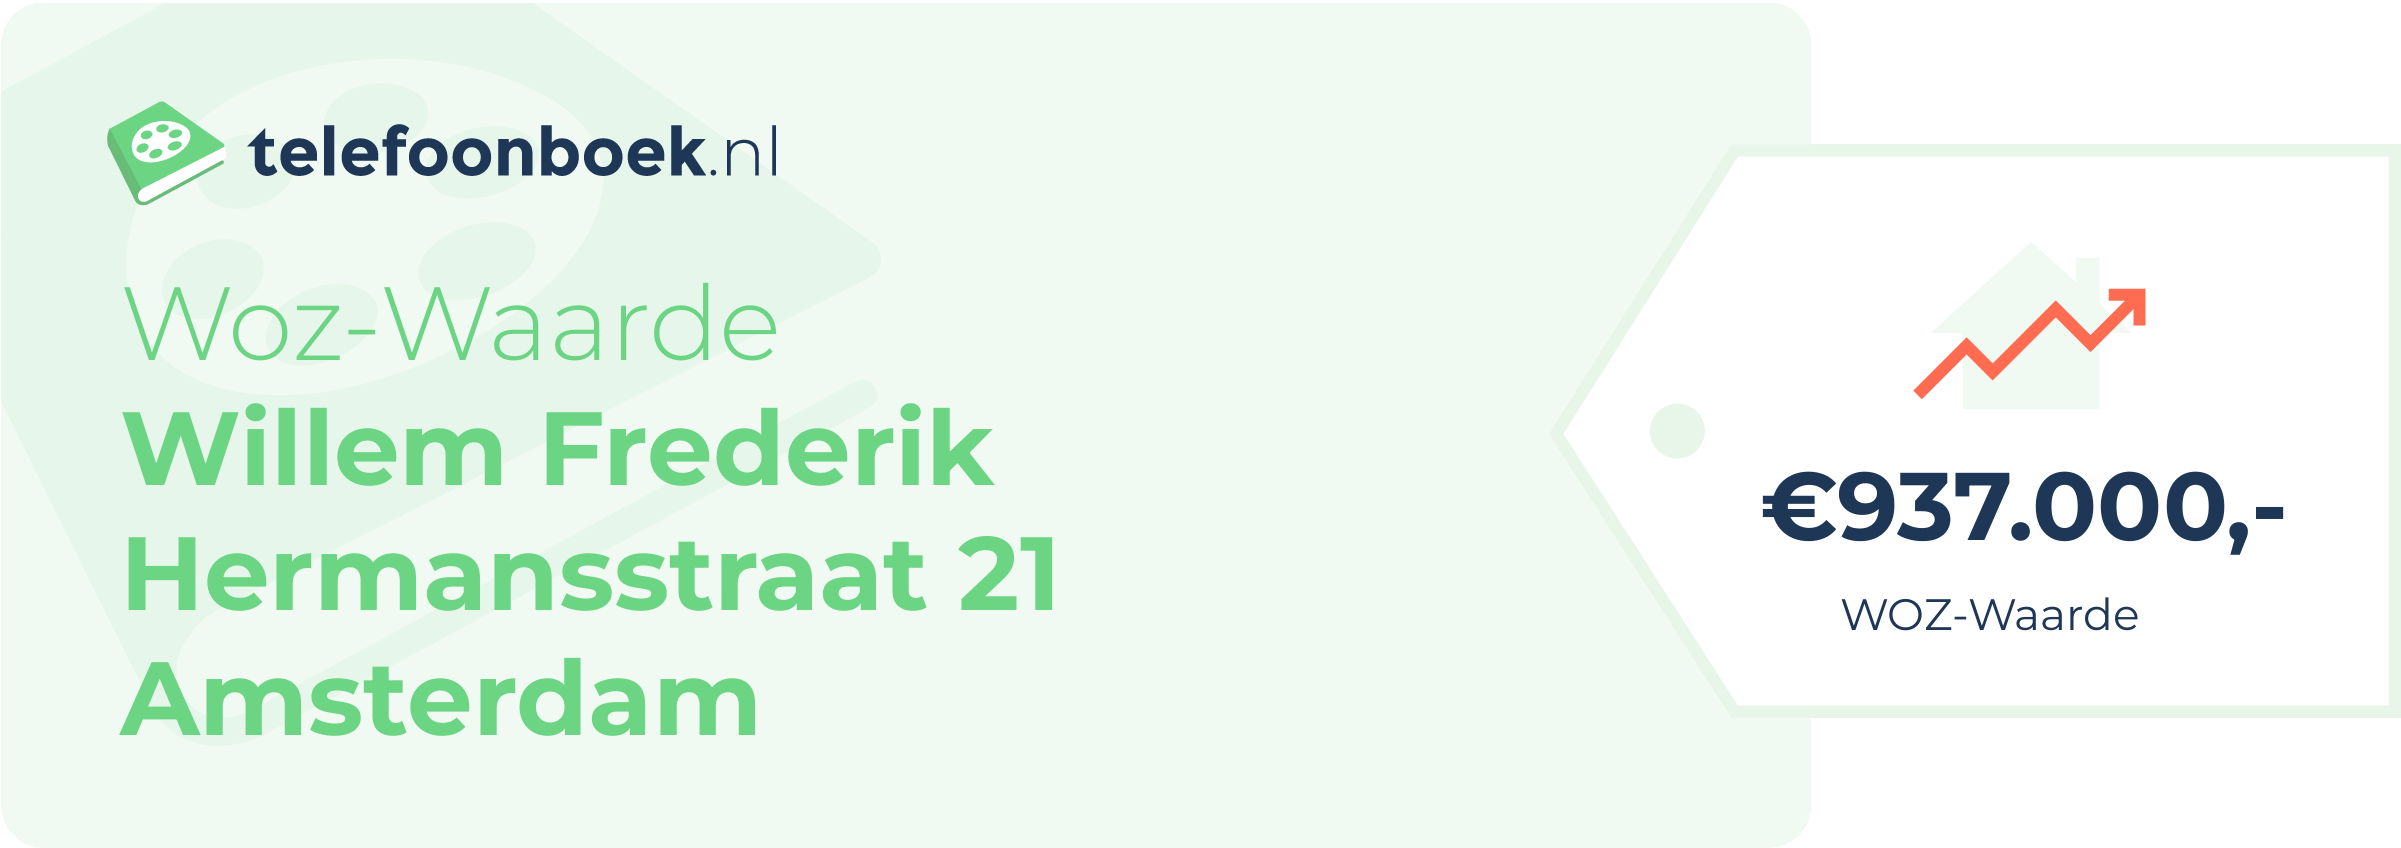 WOZ-waarde Willem Frederik Hermansstraat 21 Amsterdam